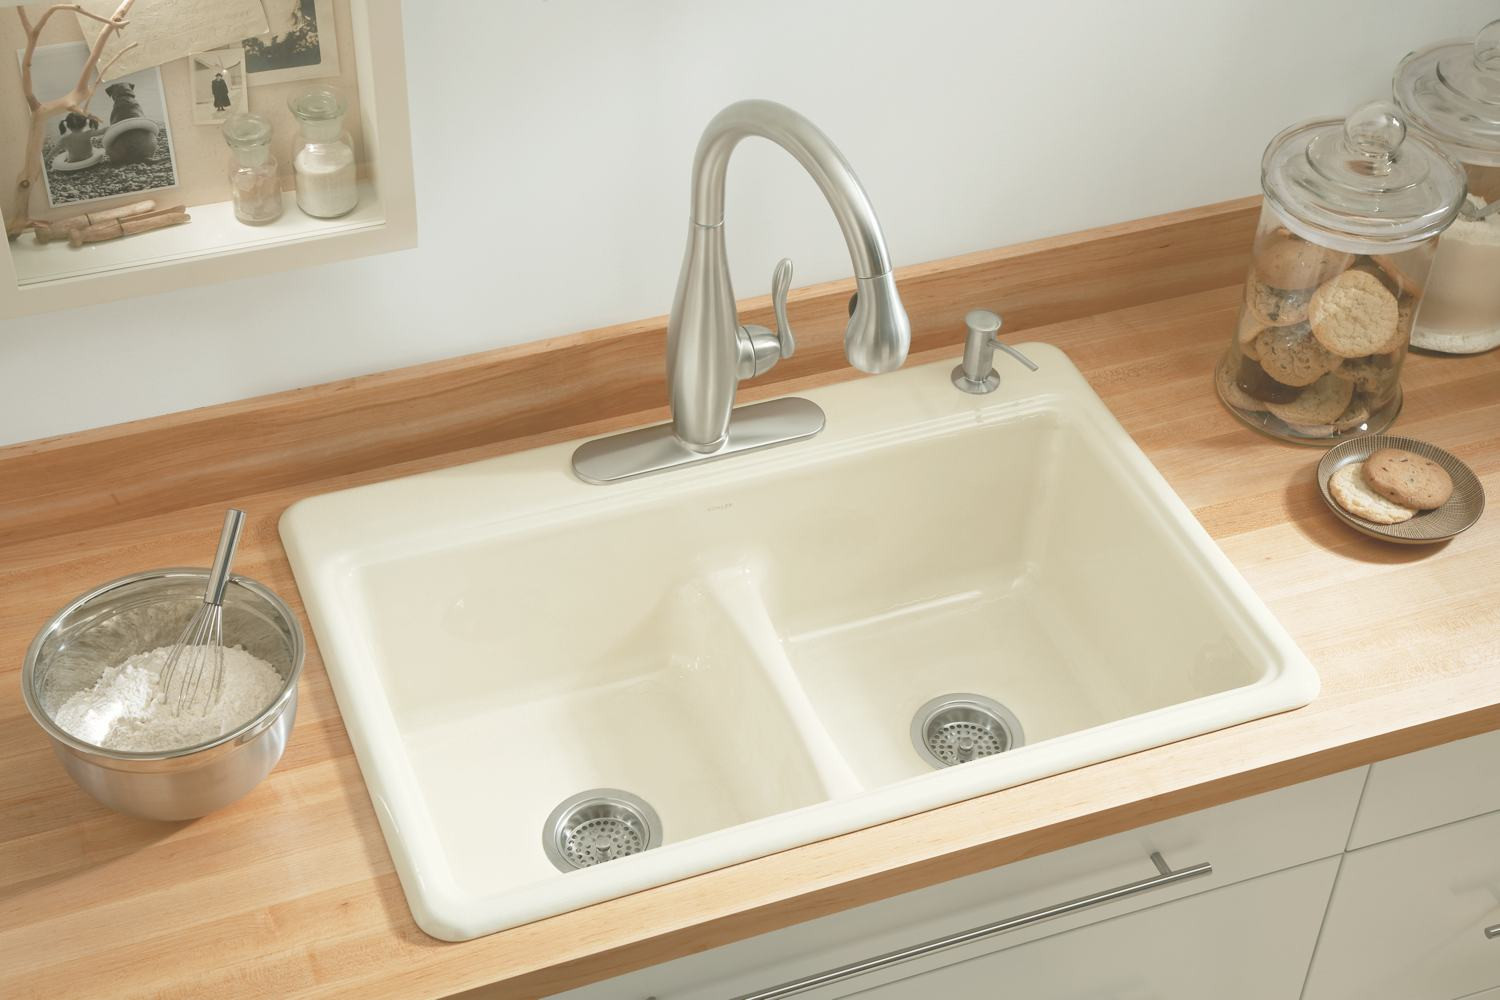 Kohler White Kitchen Sink
 KOHLER K 5838 4 0 Deerfield Smart Divide Self Rimming